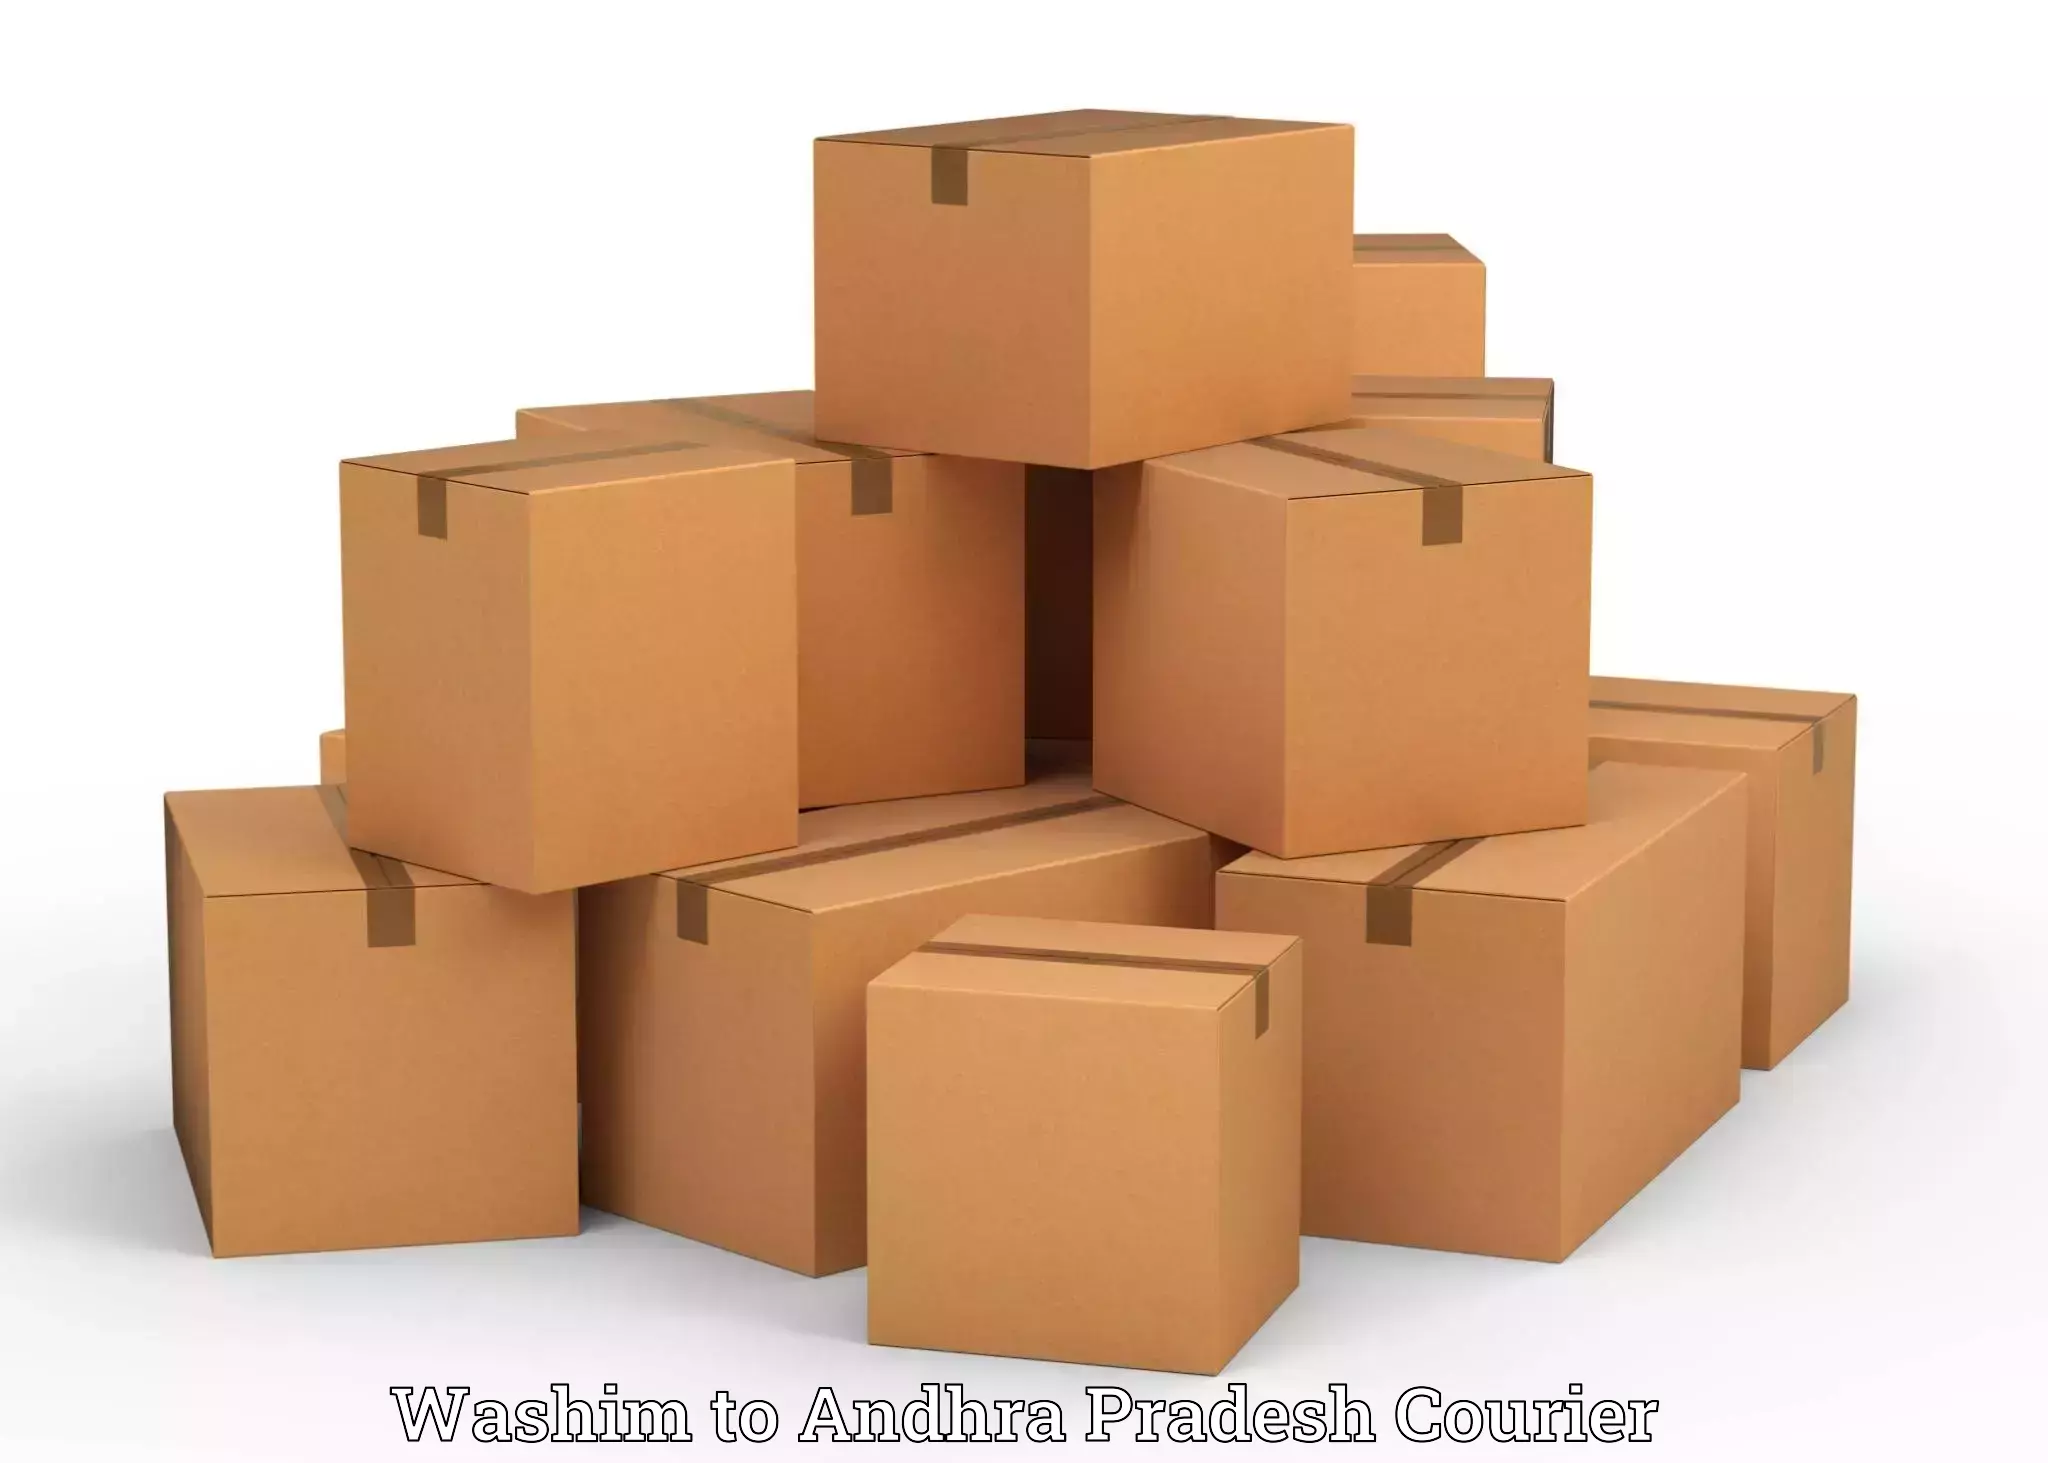 Luggage delivery estimate Washim to Cumbum Prakasam